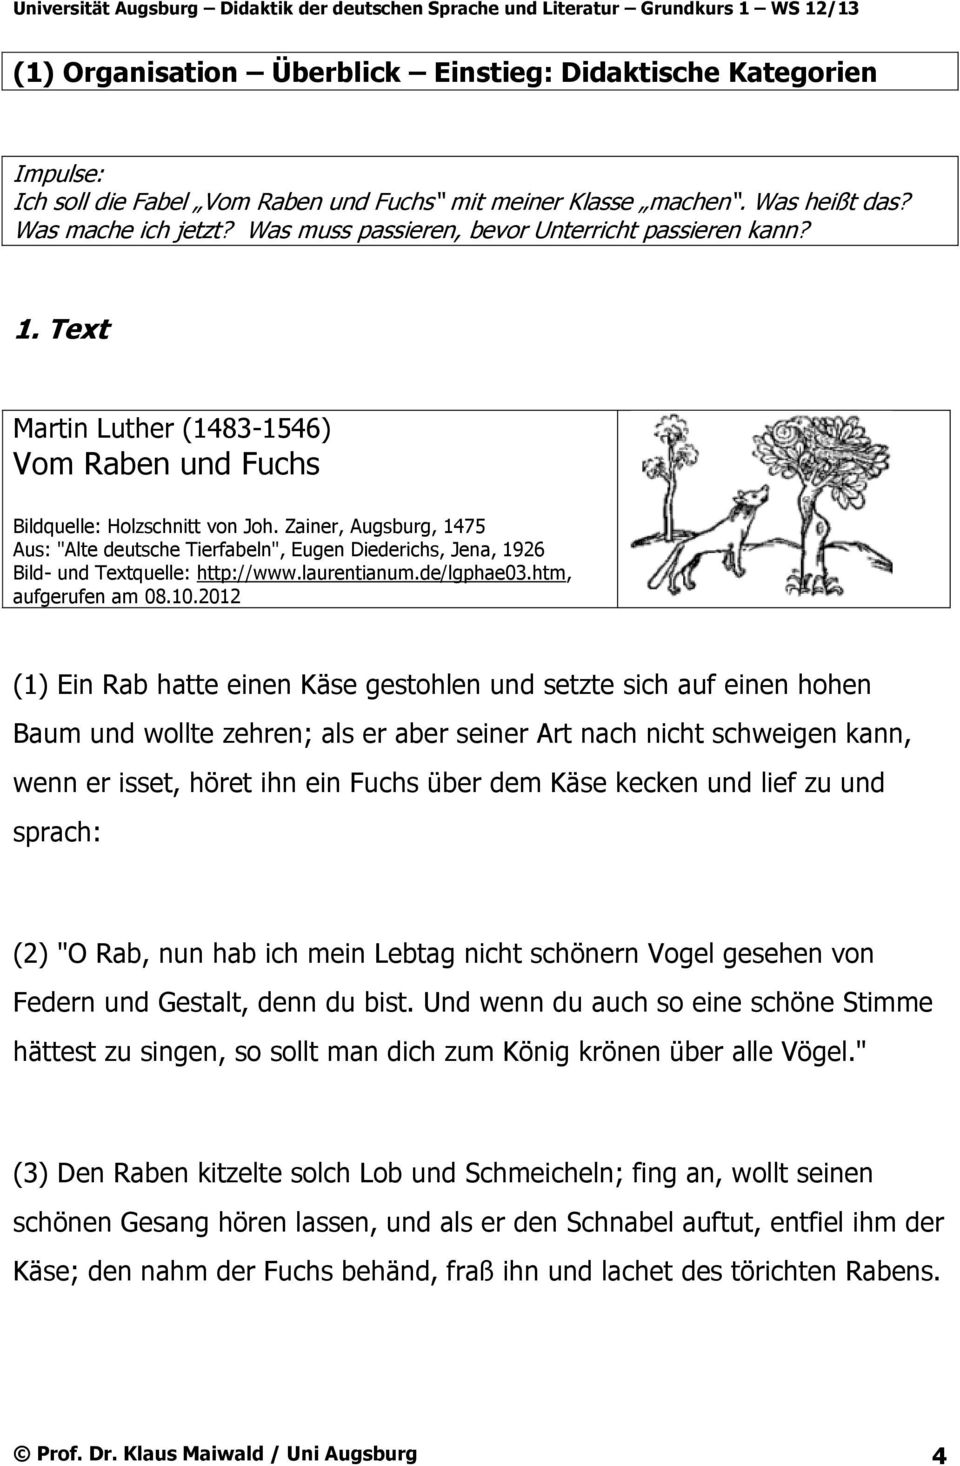 Zainer, Augsburg, 1475 Aus: "Alte deutsche Tierfabeln", Eugen Diederichs, Jena, 1926 Bild- und Textquelle: http://www.laurentianum.de/lgphae03.htm, aufgerufen am 08.10.